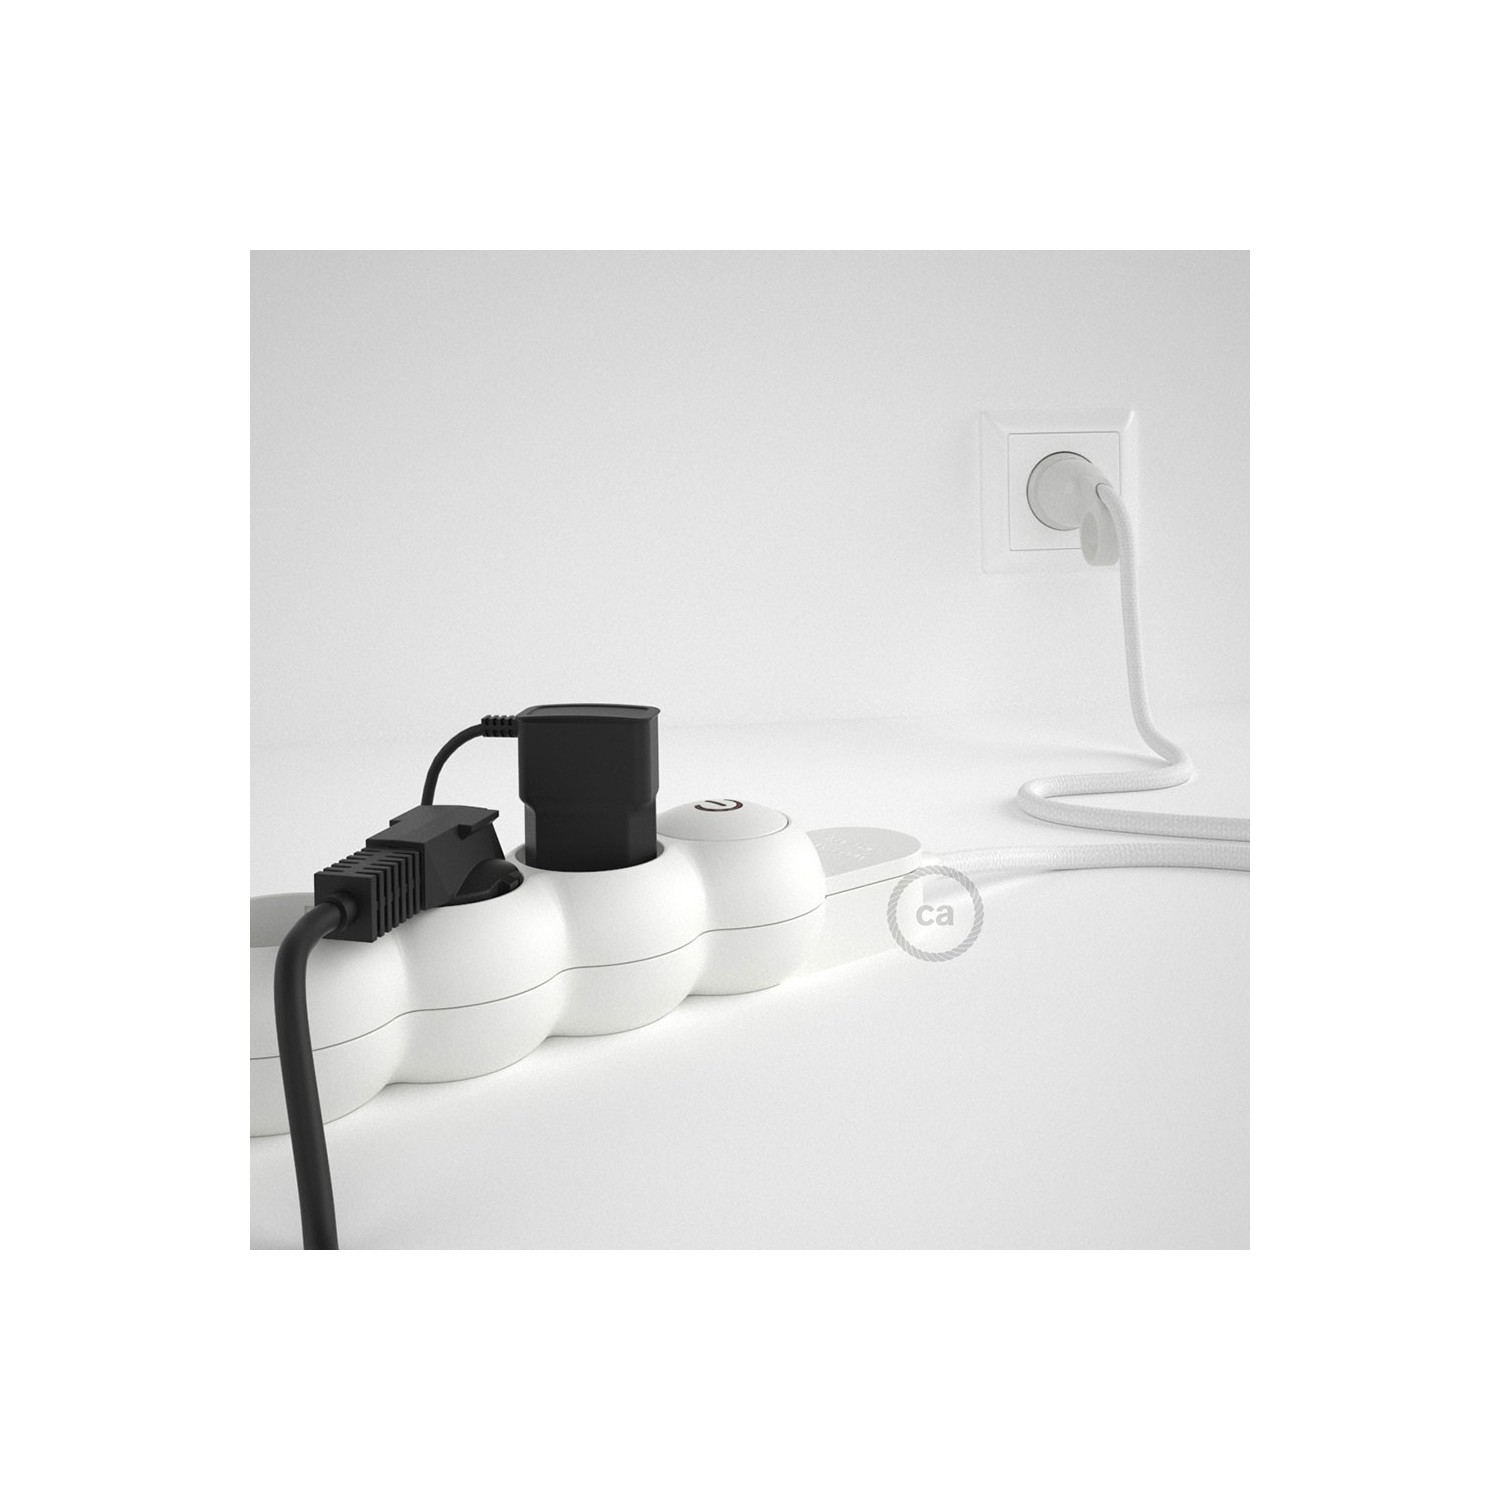 Stekkerdoos met strijkijzersnoer van witte viscose RM01 en randaarde stekker met comfortabele "ring" grip